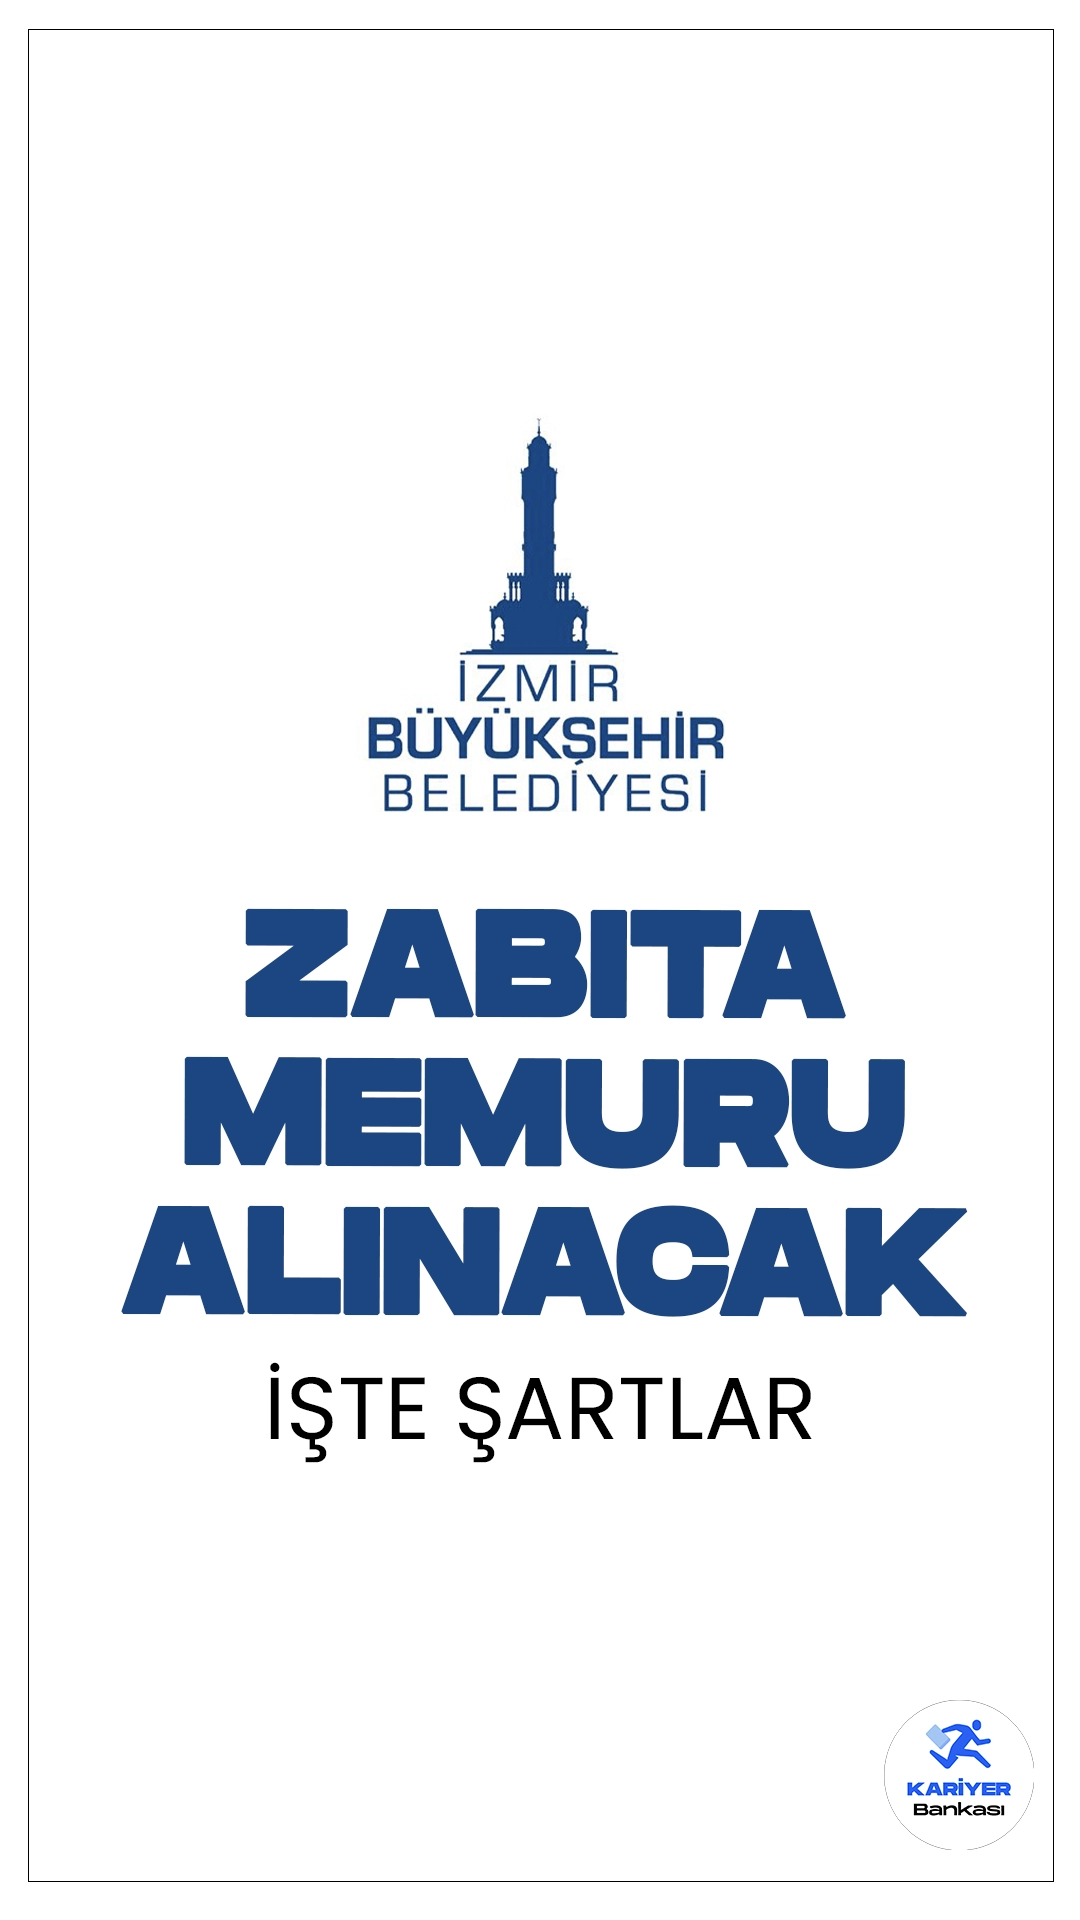 İzmir Büyükşehir Belediyesi, zabıta memuru pozisyonlarına açıktan atama yapacak.